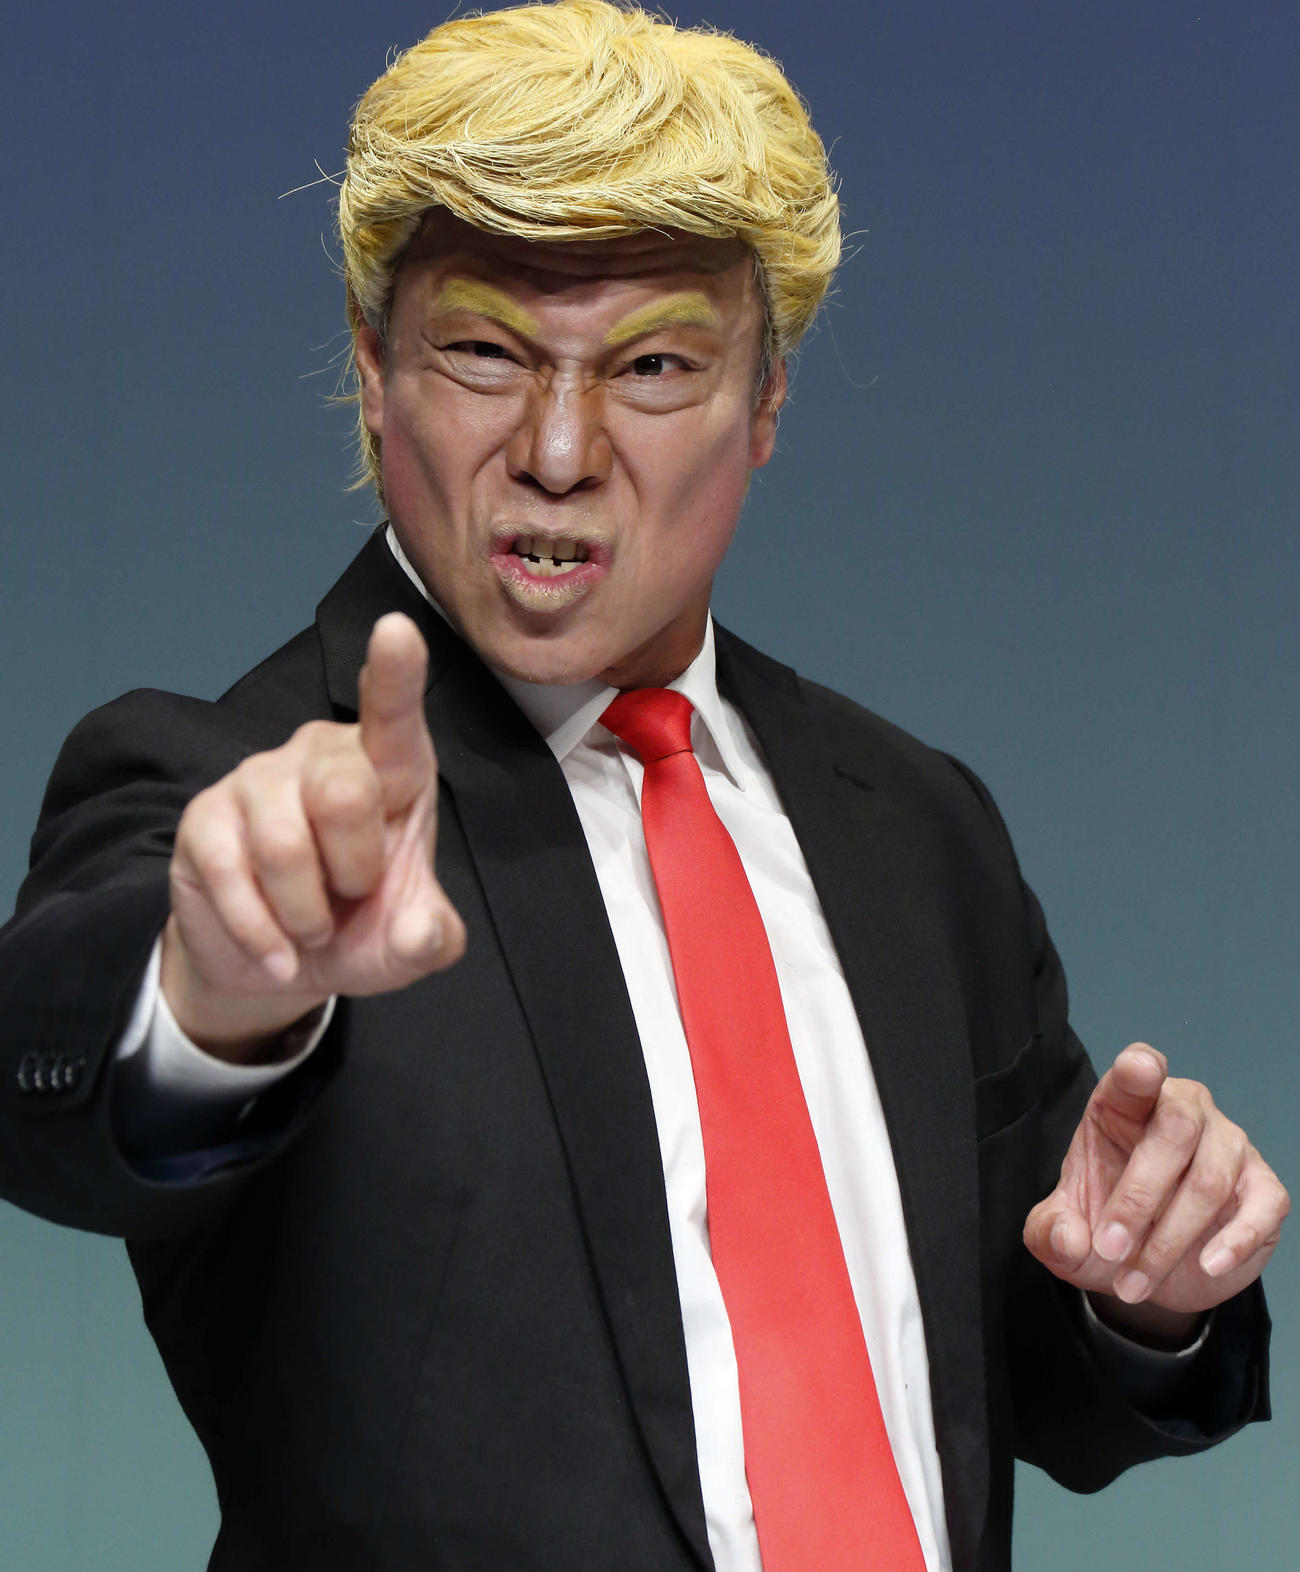 ザ・ニュースペーパーの松下アキラが扮するトランプ大統領。この金髪かつらを脱ぐと白髪頭のバイデン氏に早替わりできる